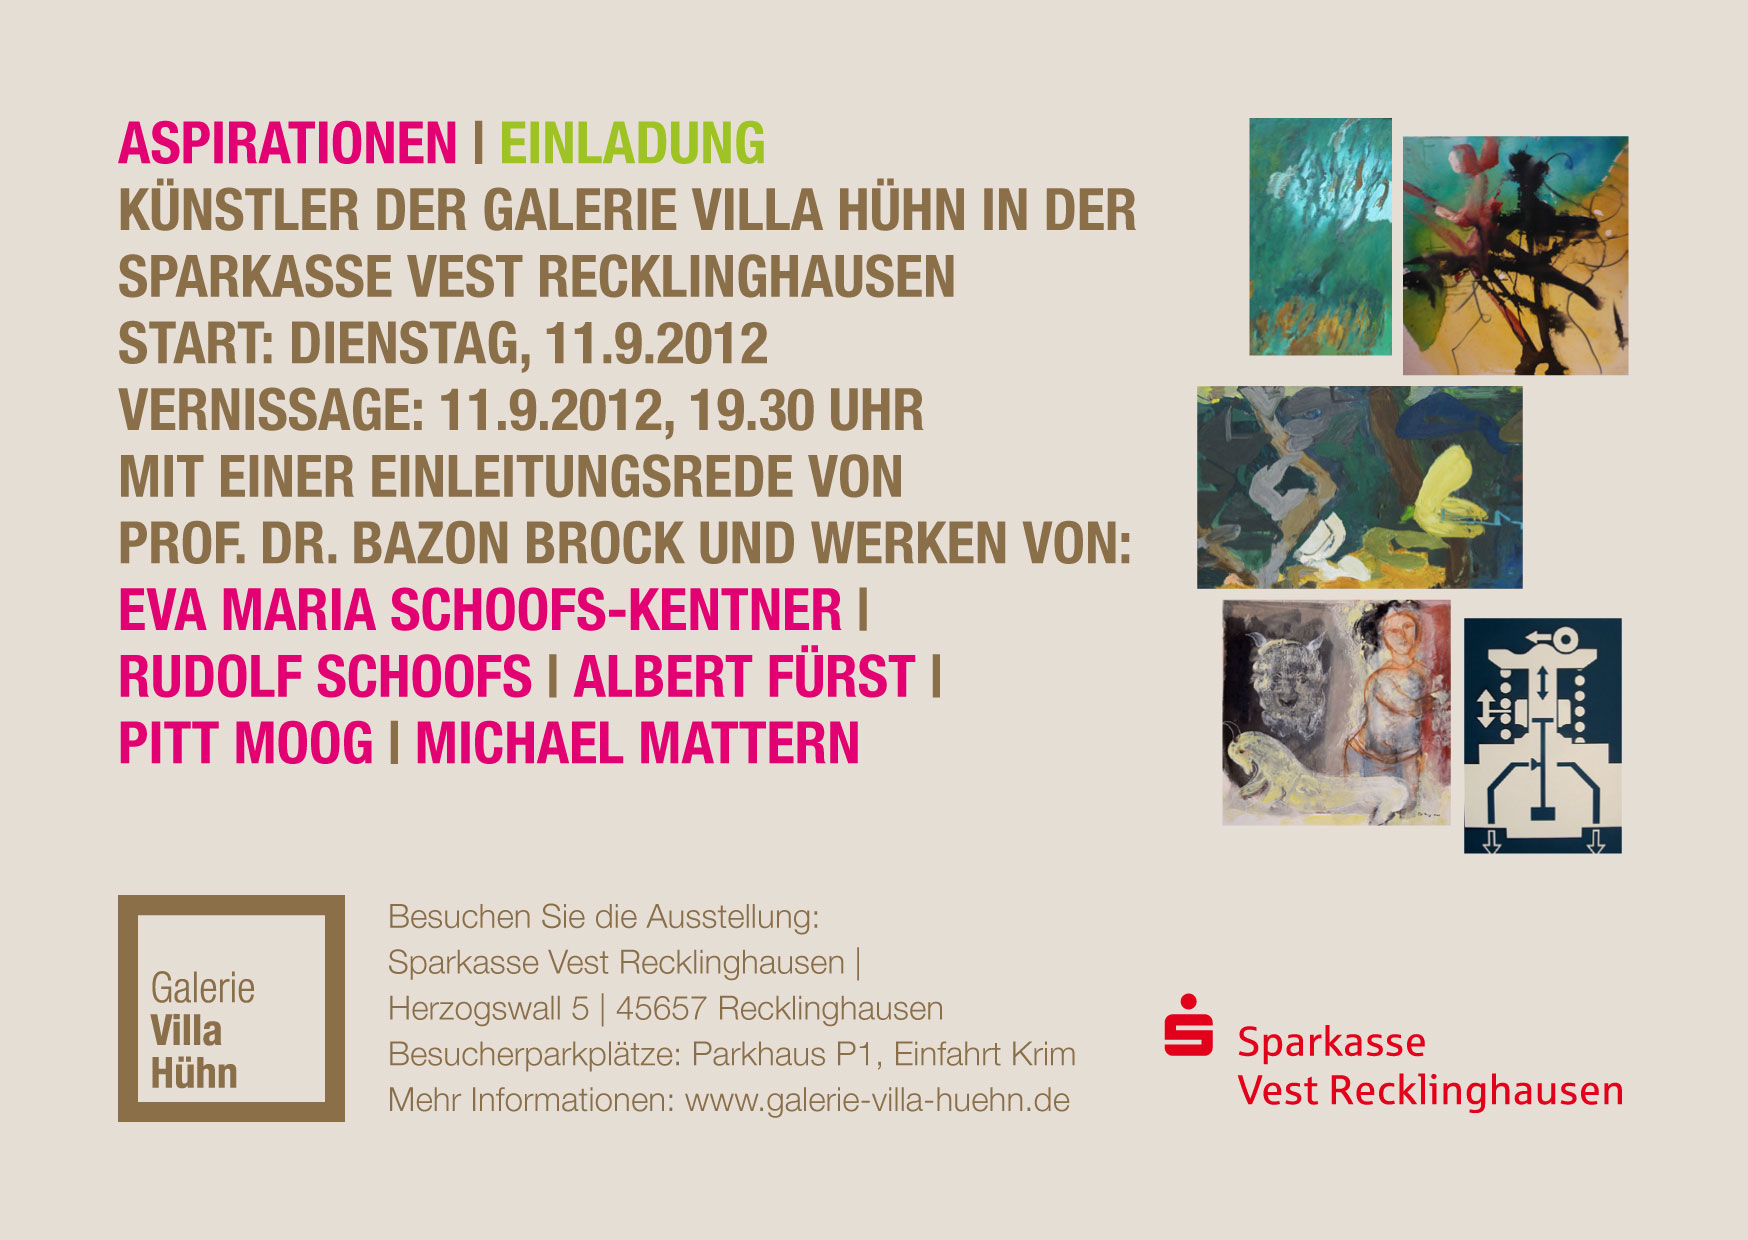 Künstler der Galerie Villa Hühn (Gevelsberg) in Recklinghausen, Bild: Flyer S. 1, 11.09.2012.